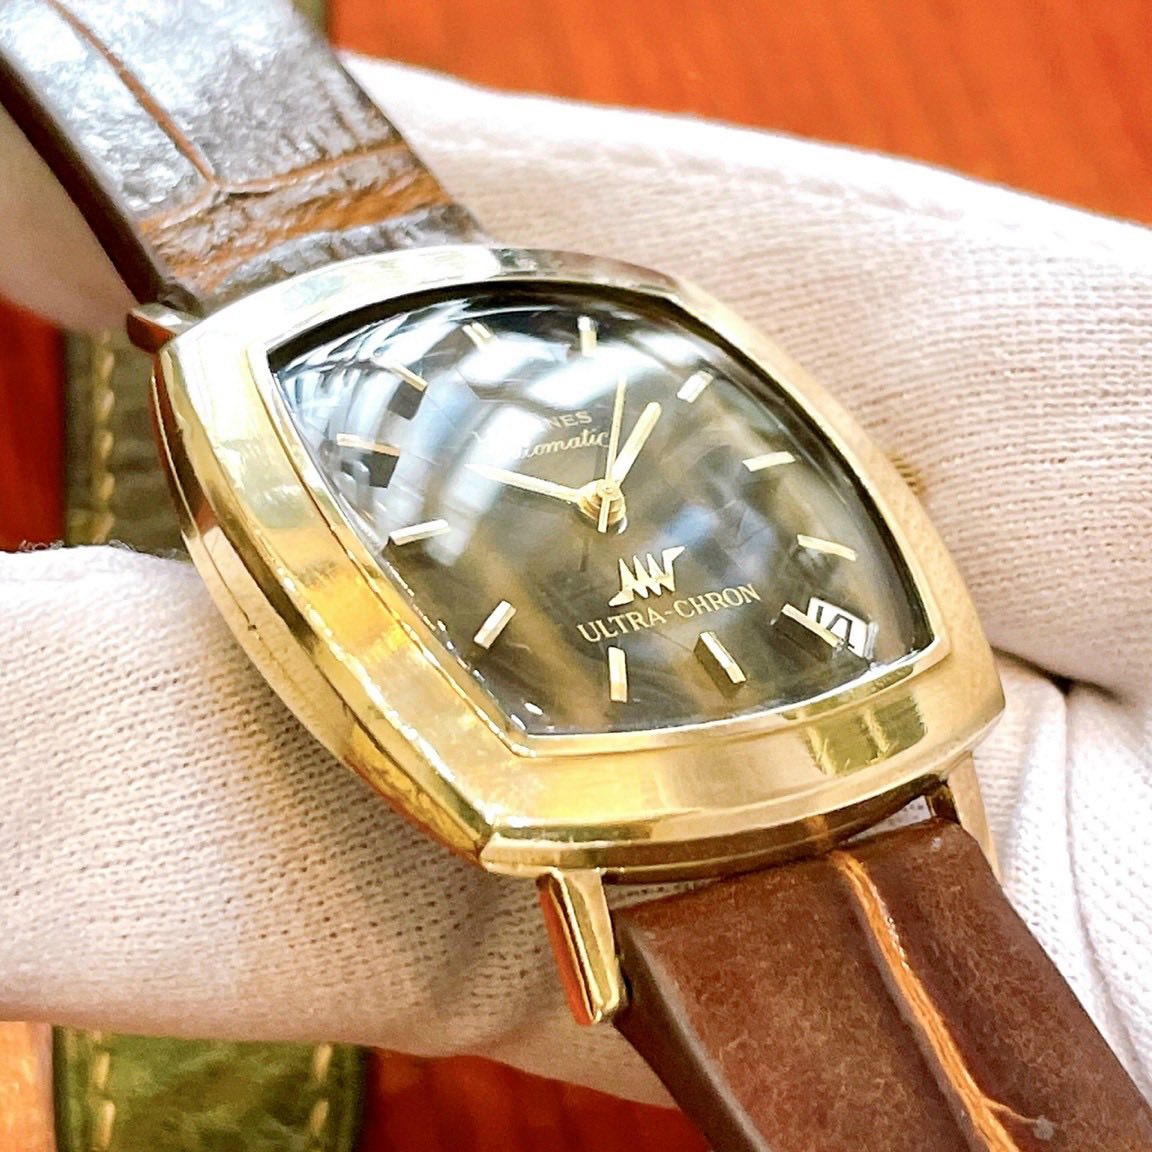 Đồng hồ cổ Longines Ultra Chrono Automatic bọc vàng chính hãng Thụy Sĩ 